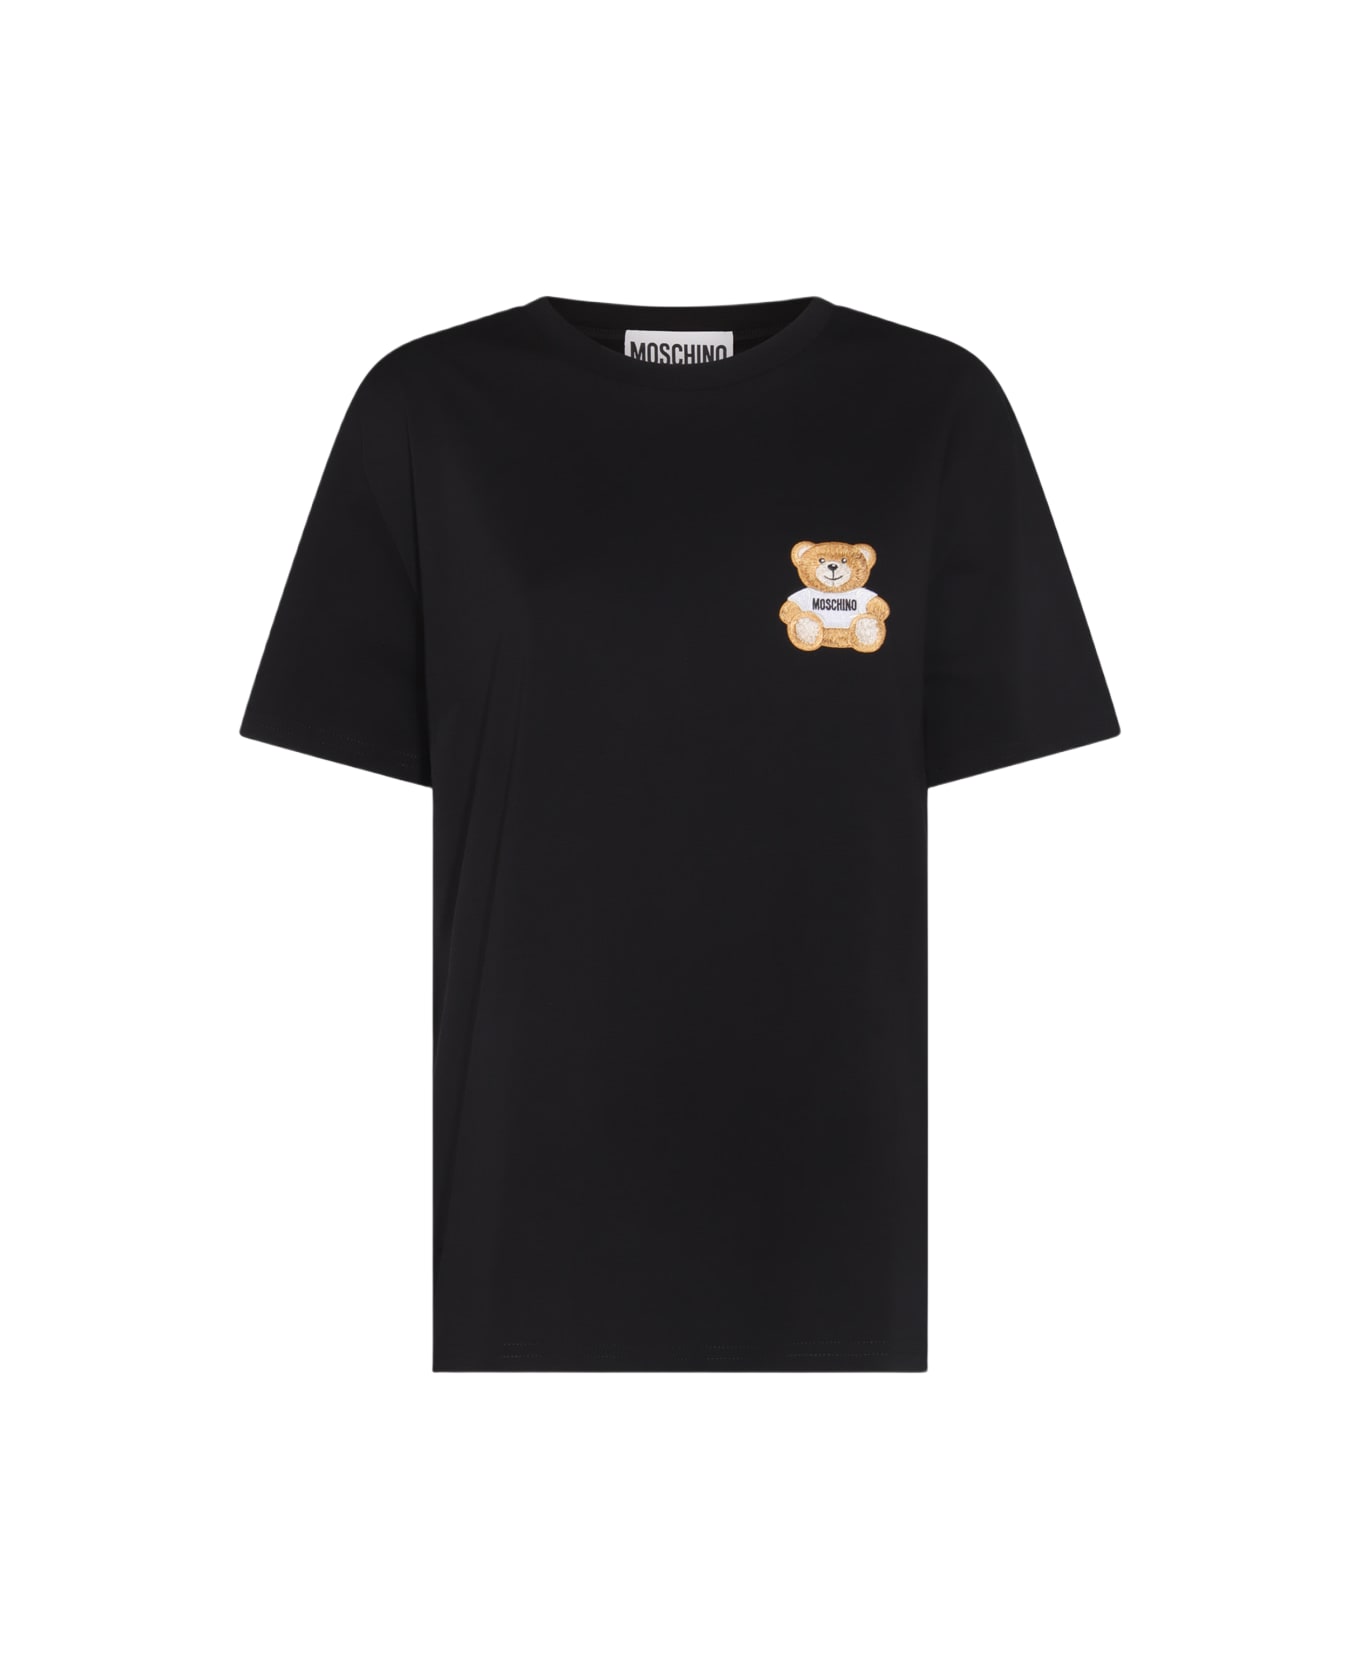 Moschino Black Cotton T-shirt - Nero